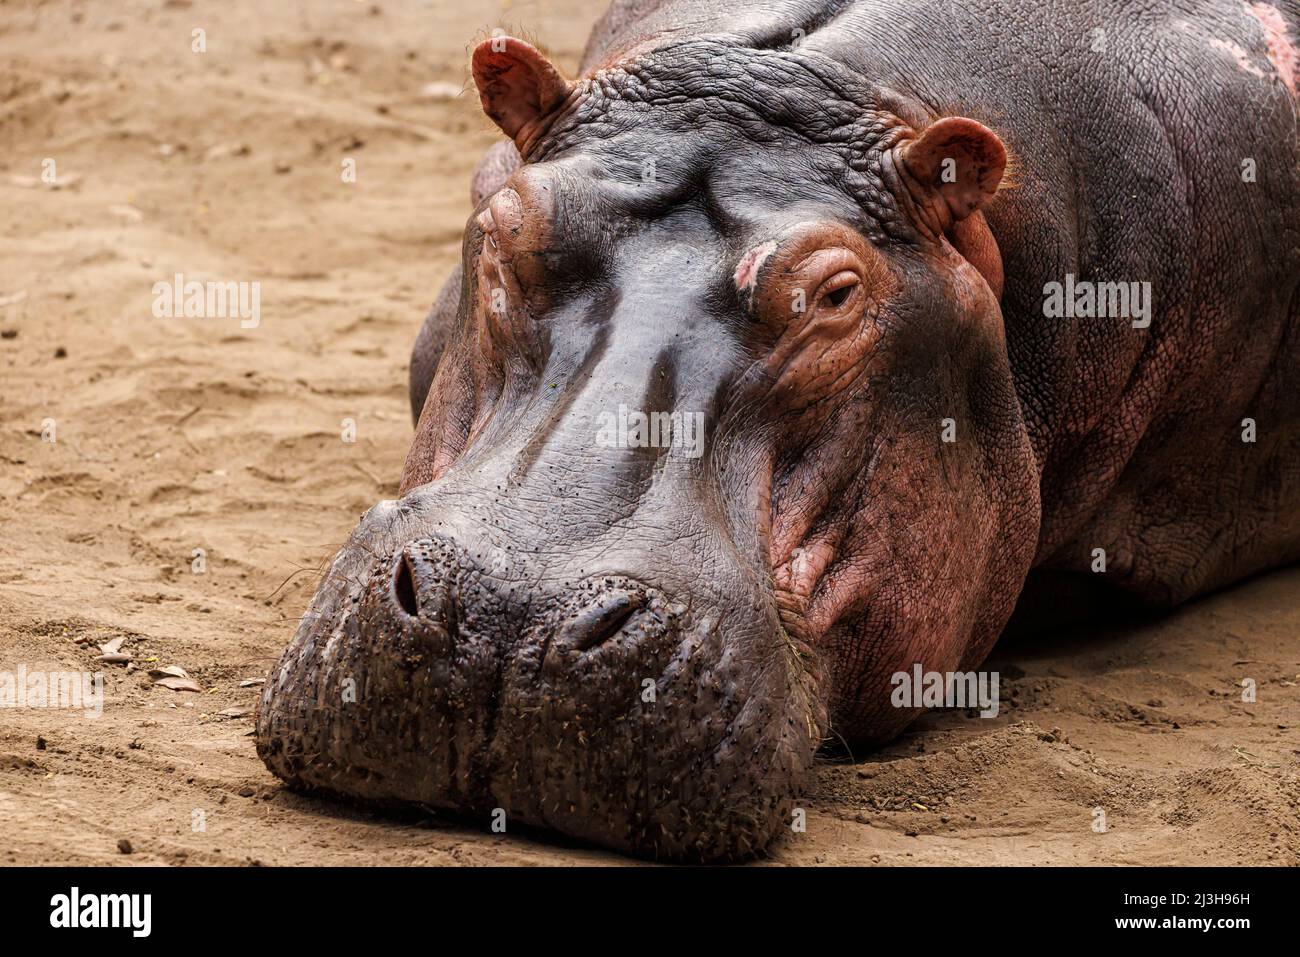 Uganda, Rubirizi district, Katunguru, Queen Elizabeth National Park, Hippopotamus Stock Photo